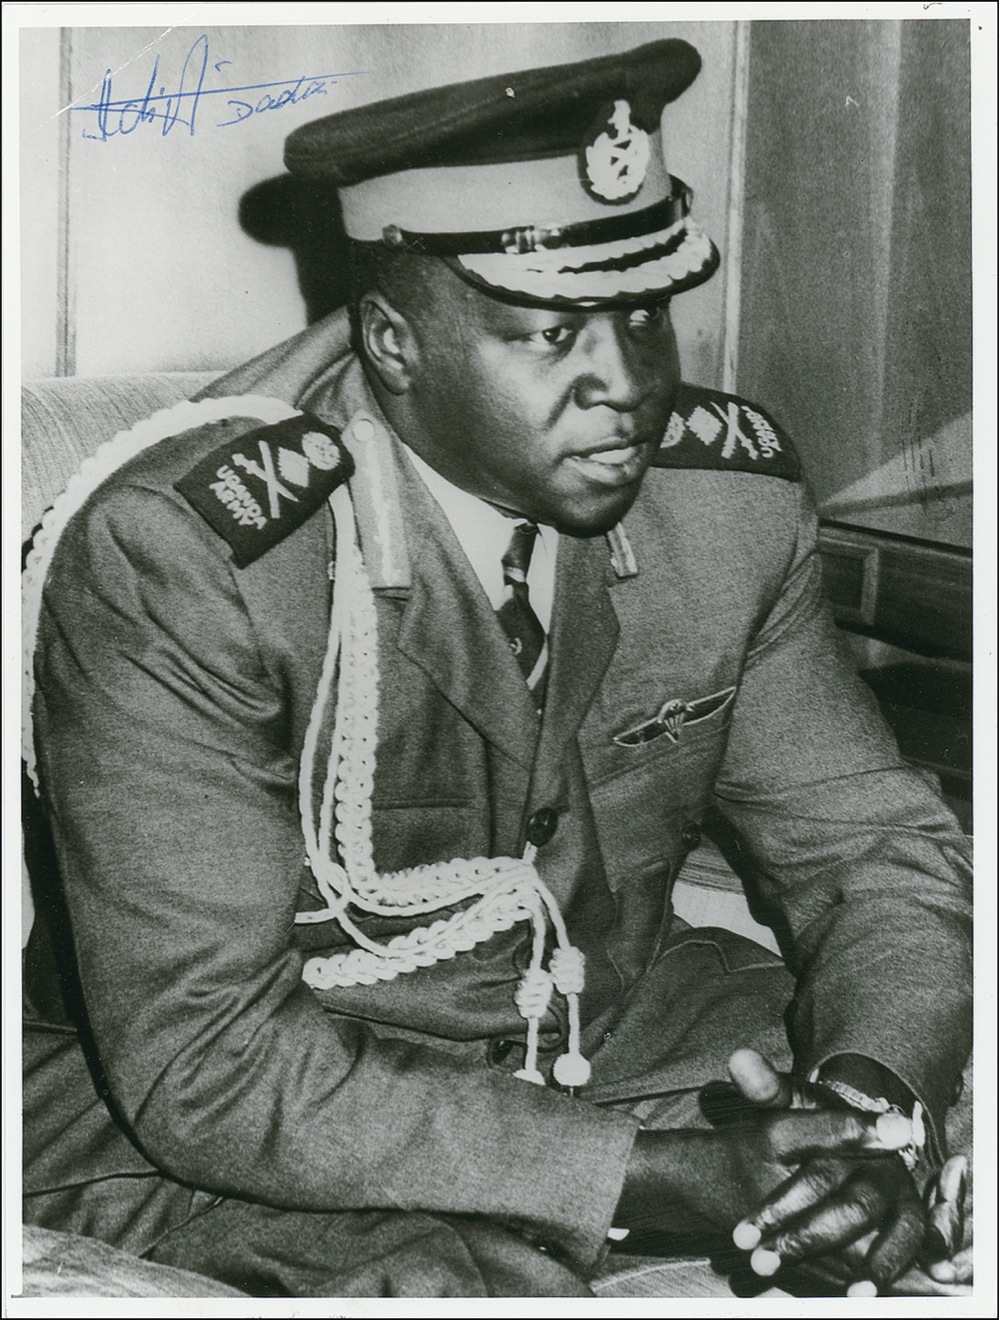 Lot #151 Idi Amin